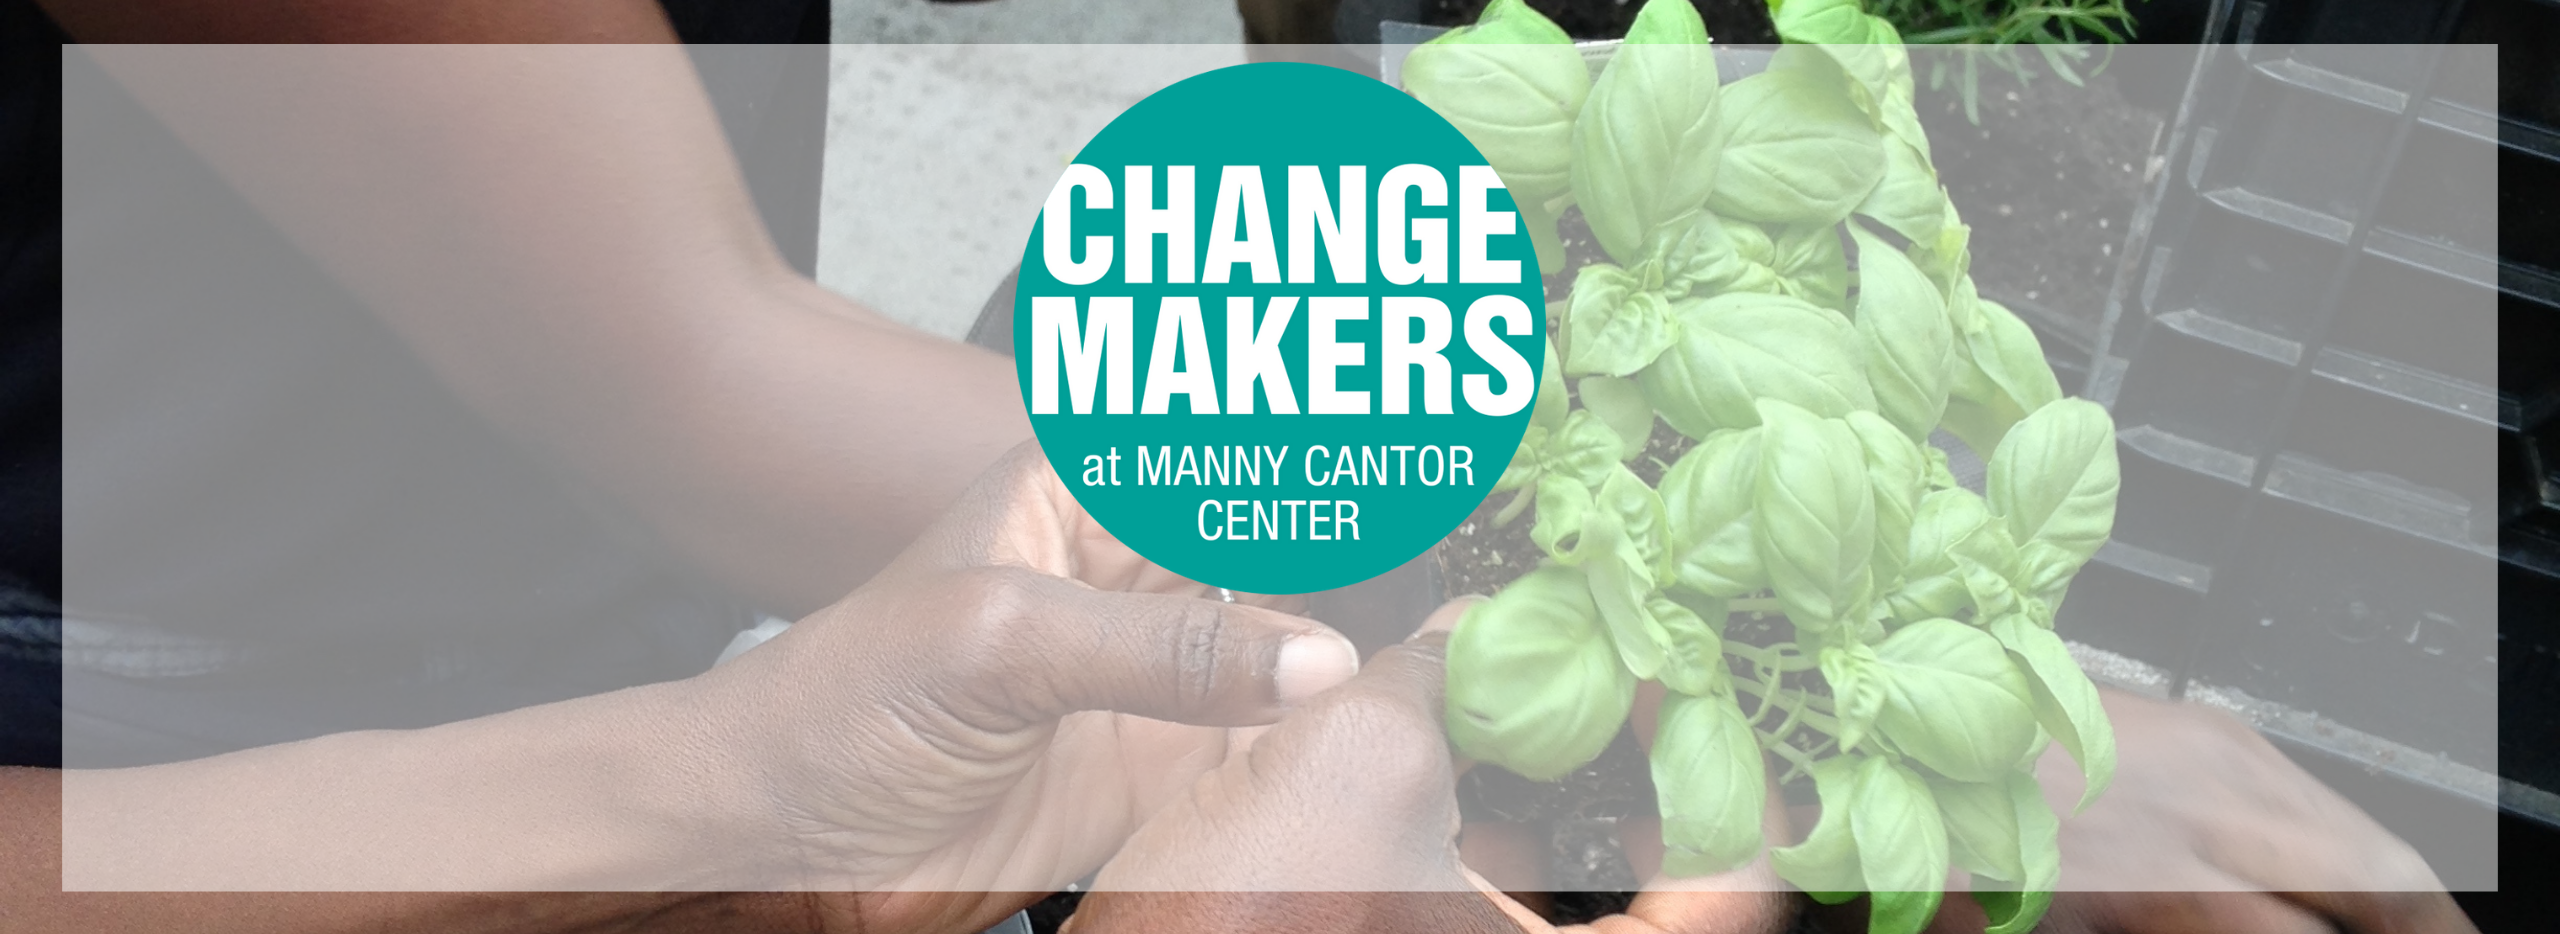 Change Makers Header Image